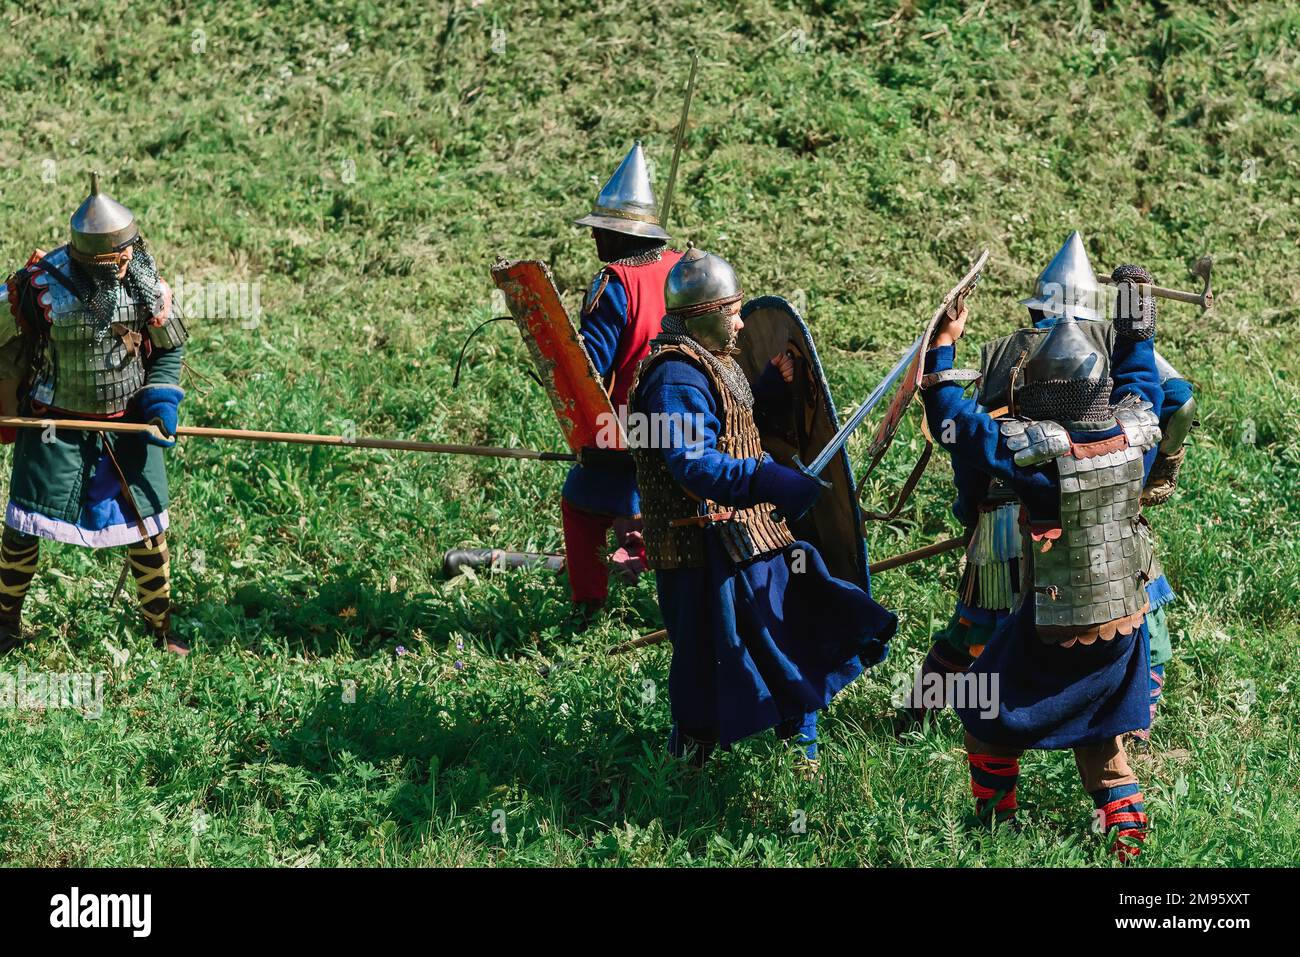 LUH, RUSSLAND - 27. AUGUST 2016: Rekonstruktion der mittelalterlichen Ritter-Schlacht in Rüstung und Waffen beim Zwiebelfest im Dorf Luh Stockfoto